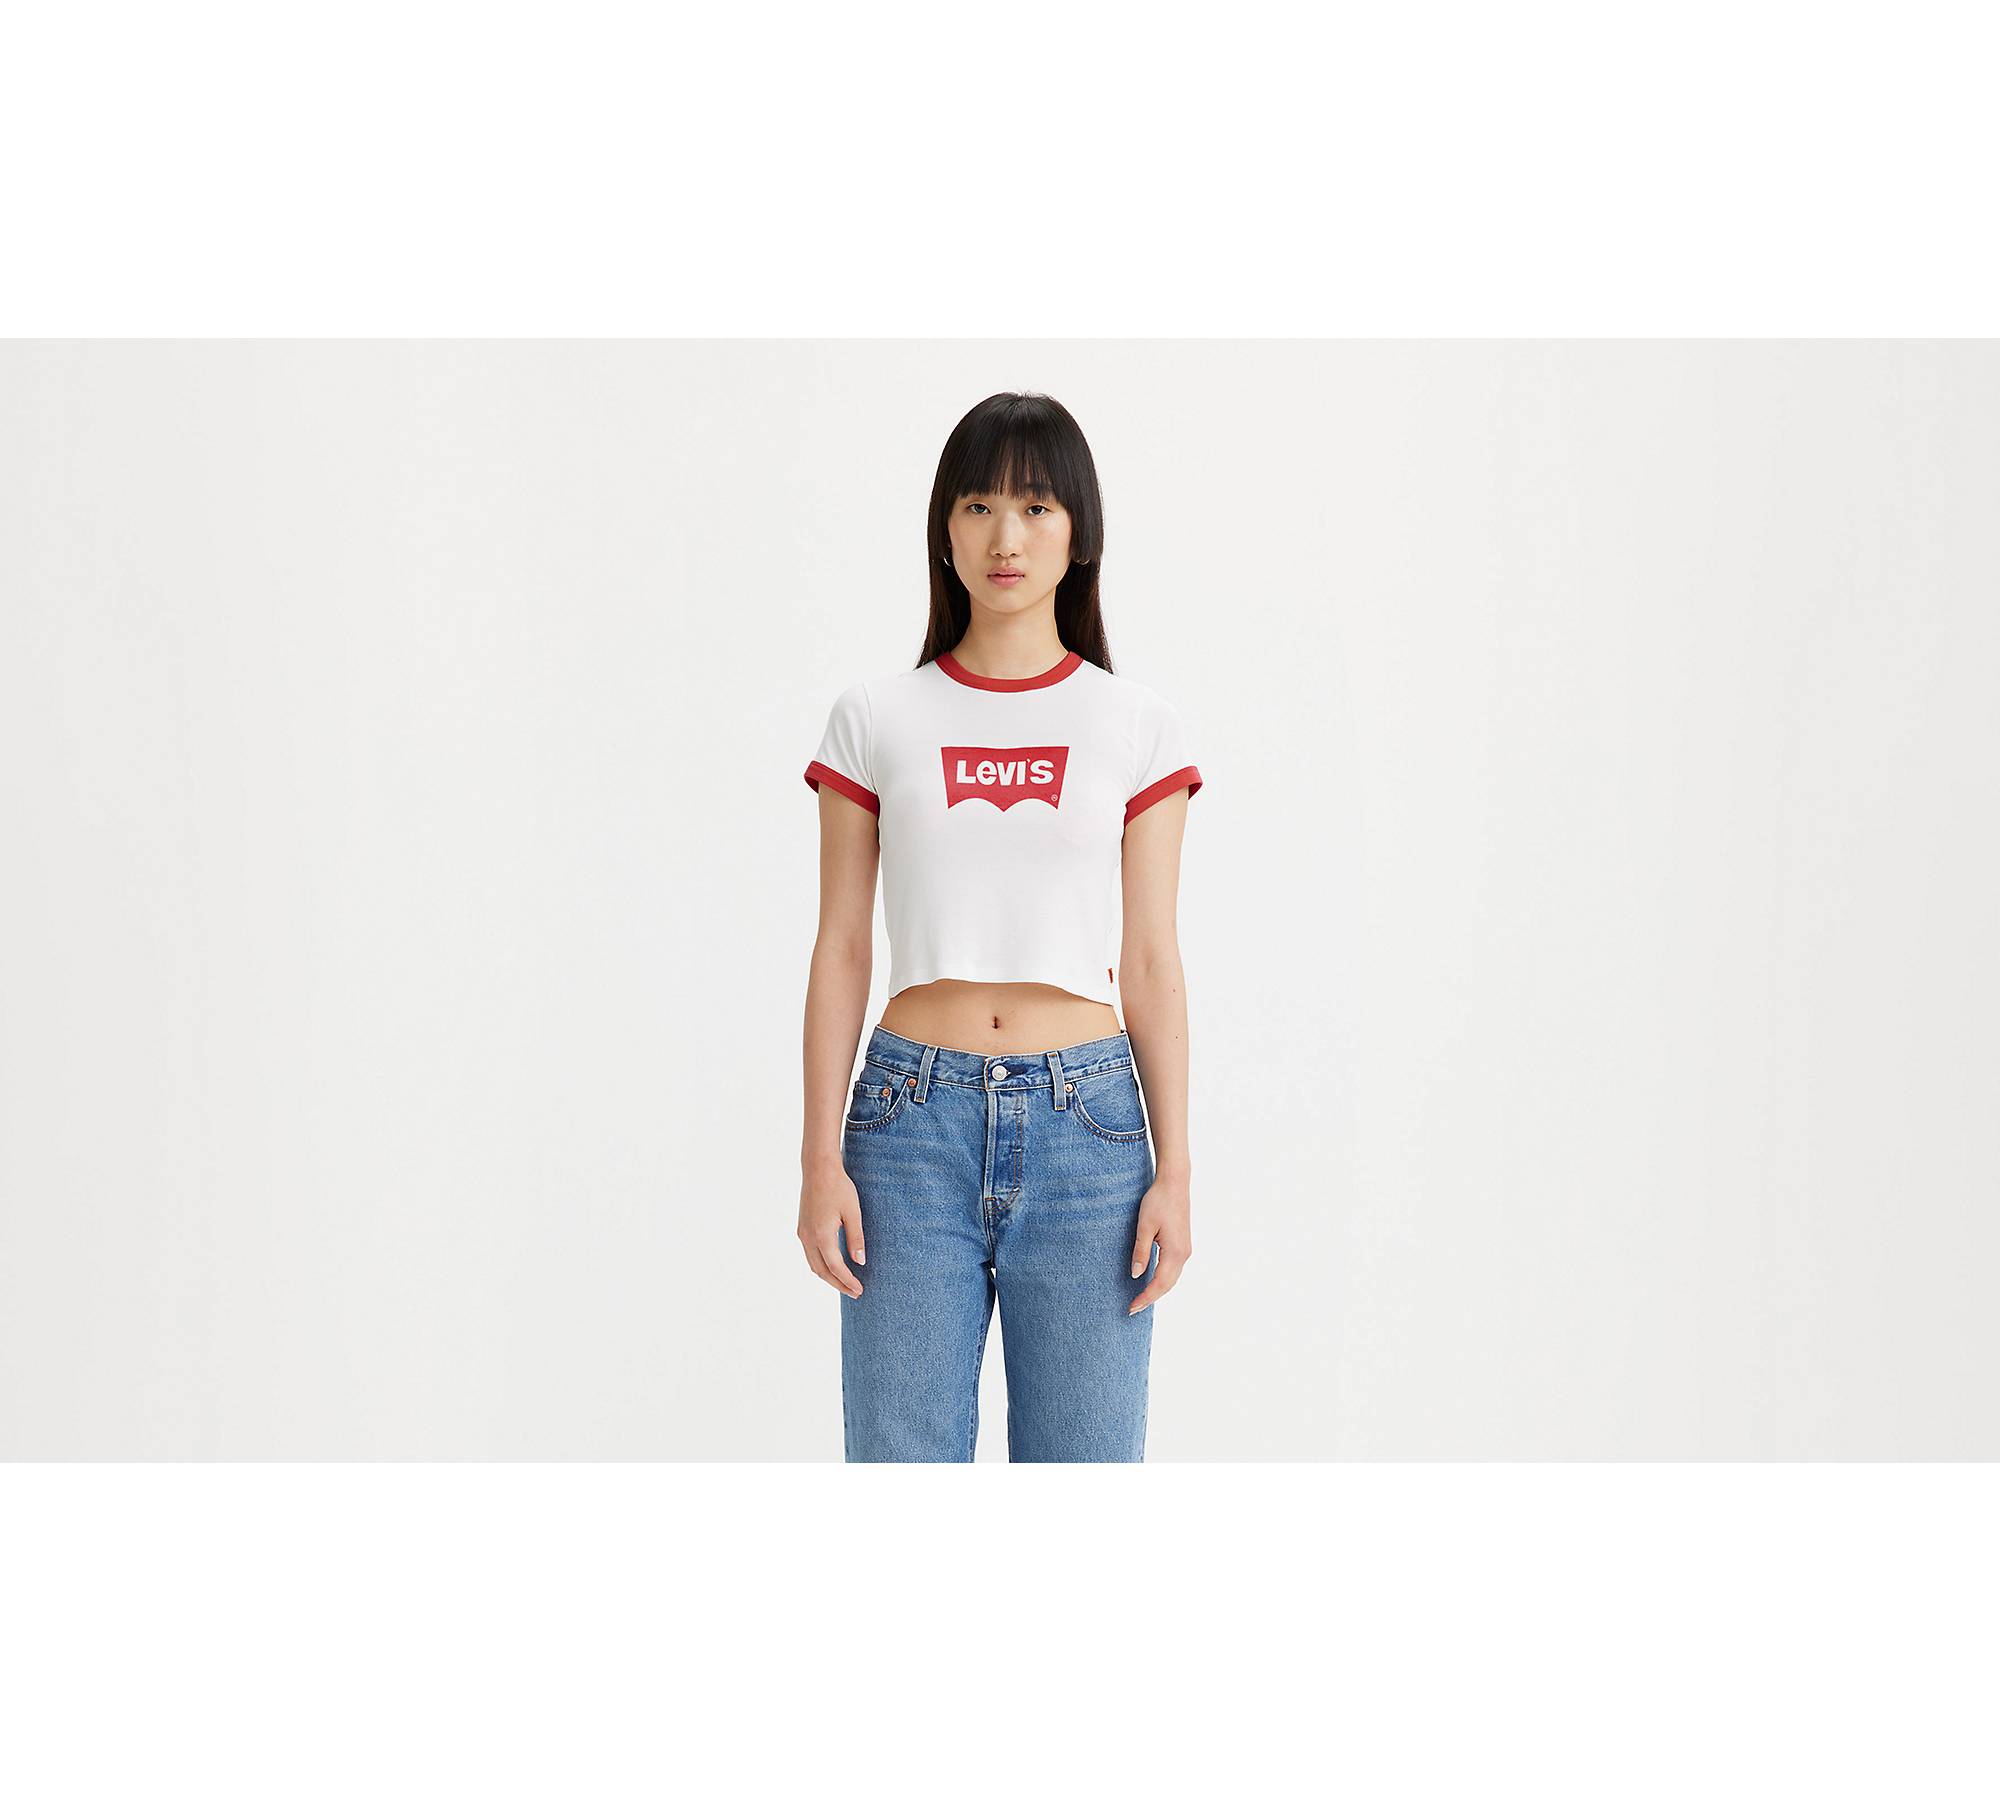 SMALL Album Uniqlo SLIM FIT Womens Tees Ladies T-Shirt